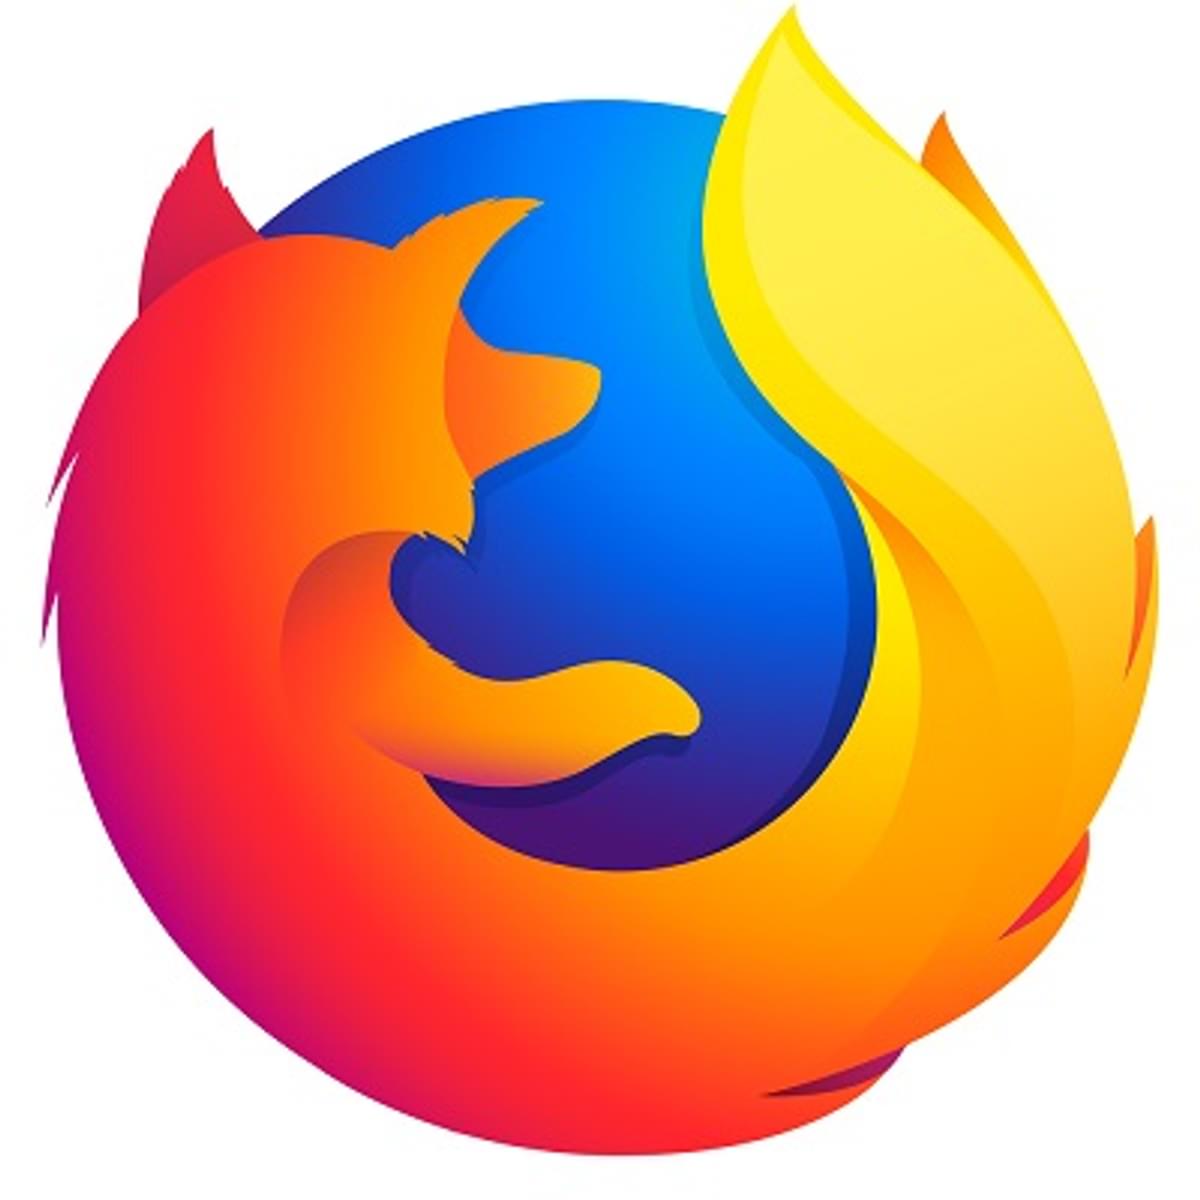 Nieuwe versie Firefox kan trackingparameters uit url verwijderen image